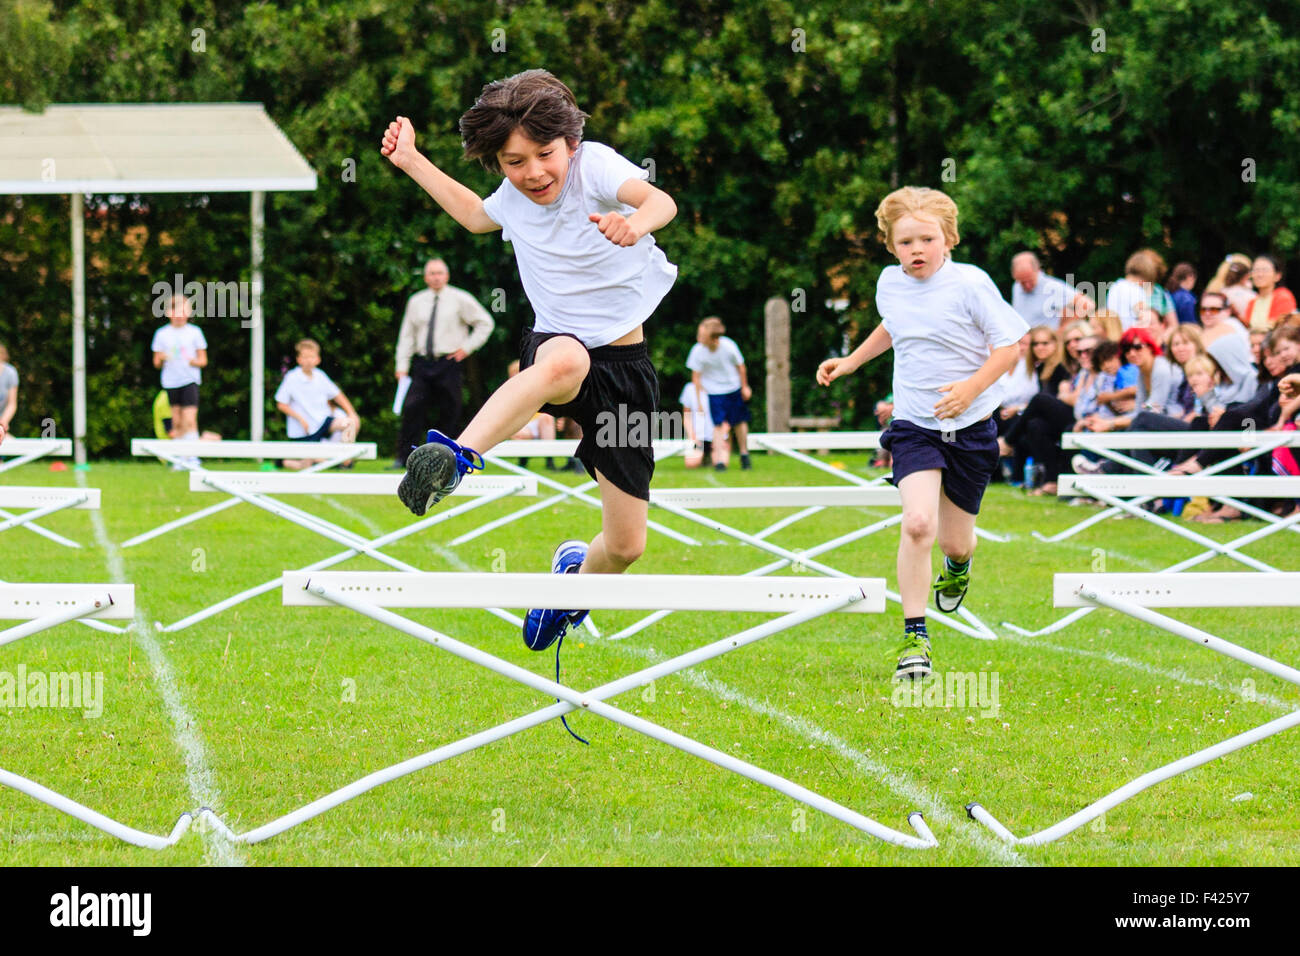 Englisch Schule Sport Tag. Kinder, Jungen, 10-11 Jahre alt, springen über  Hürden während des Rennens, auf Sport im freien Feld, racing in Richtung  Betrachter Stockfotografie - Alamy